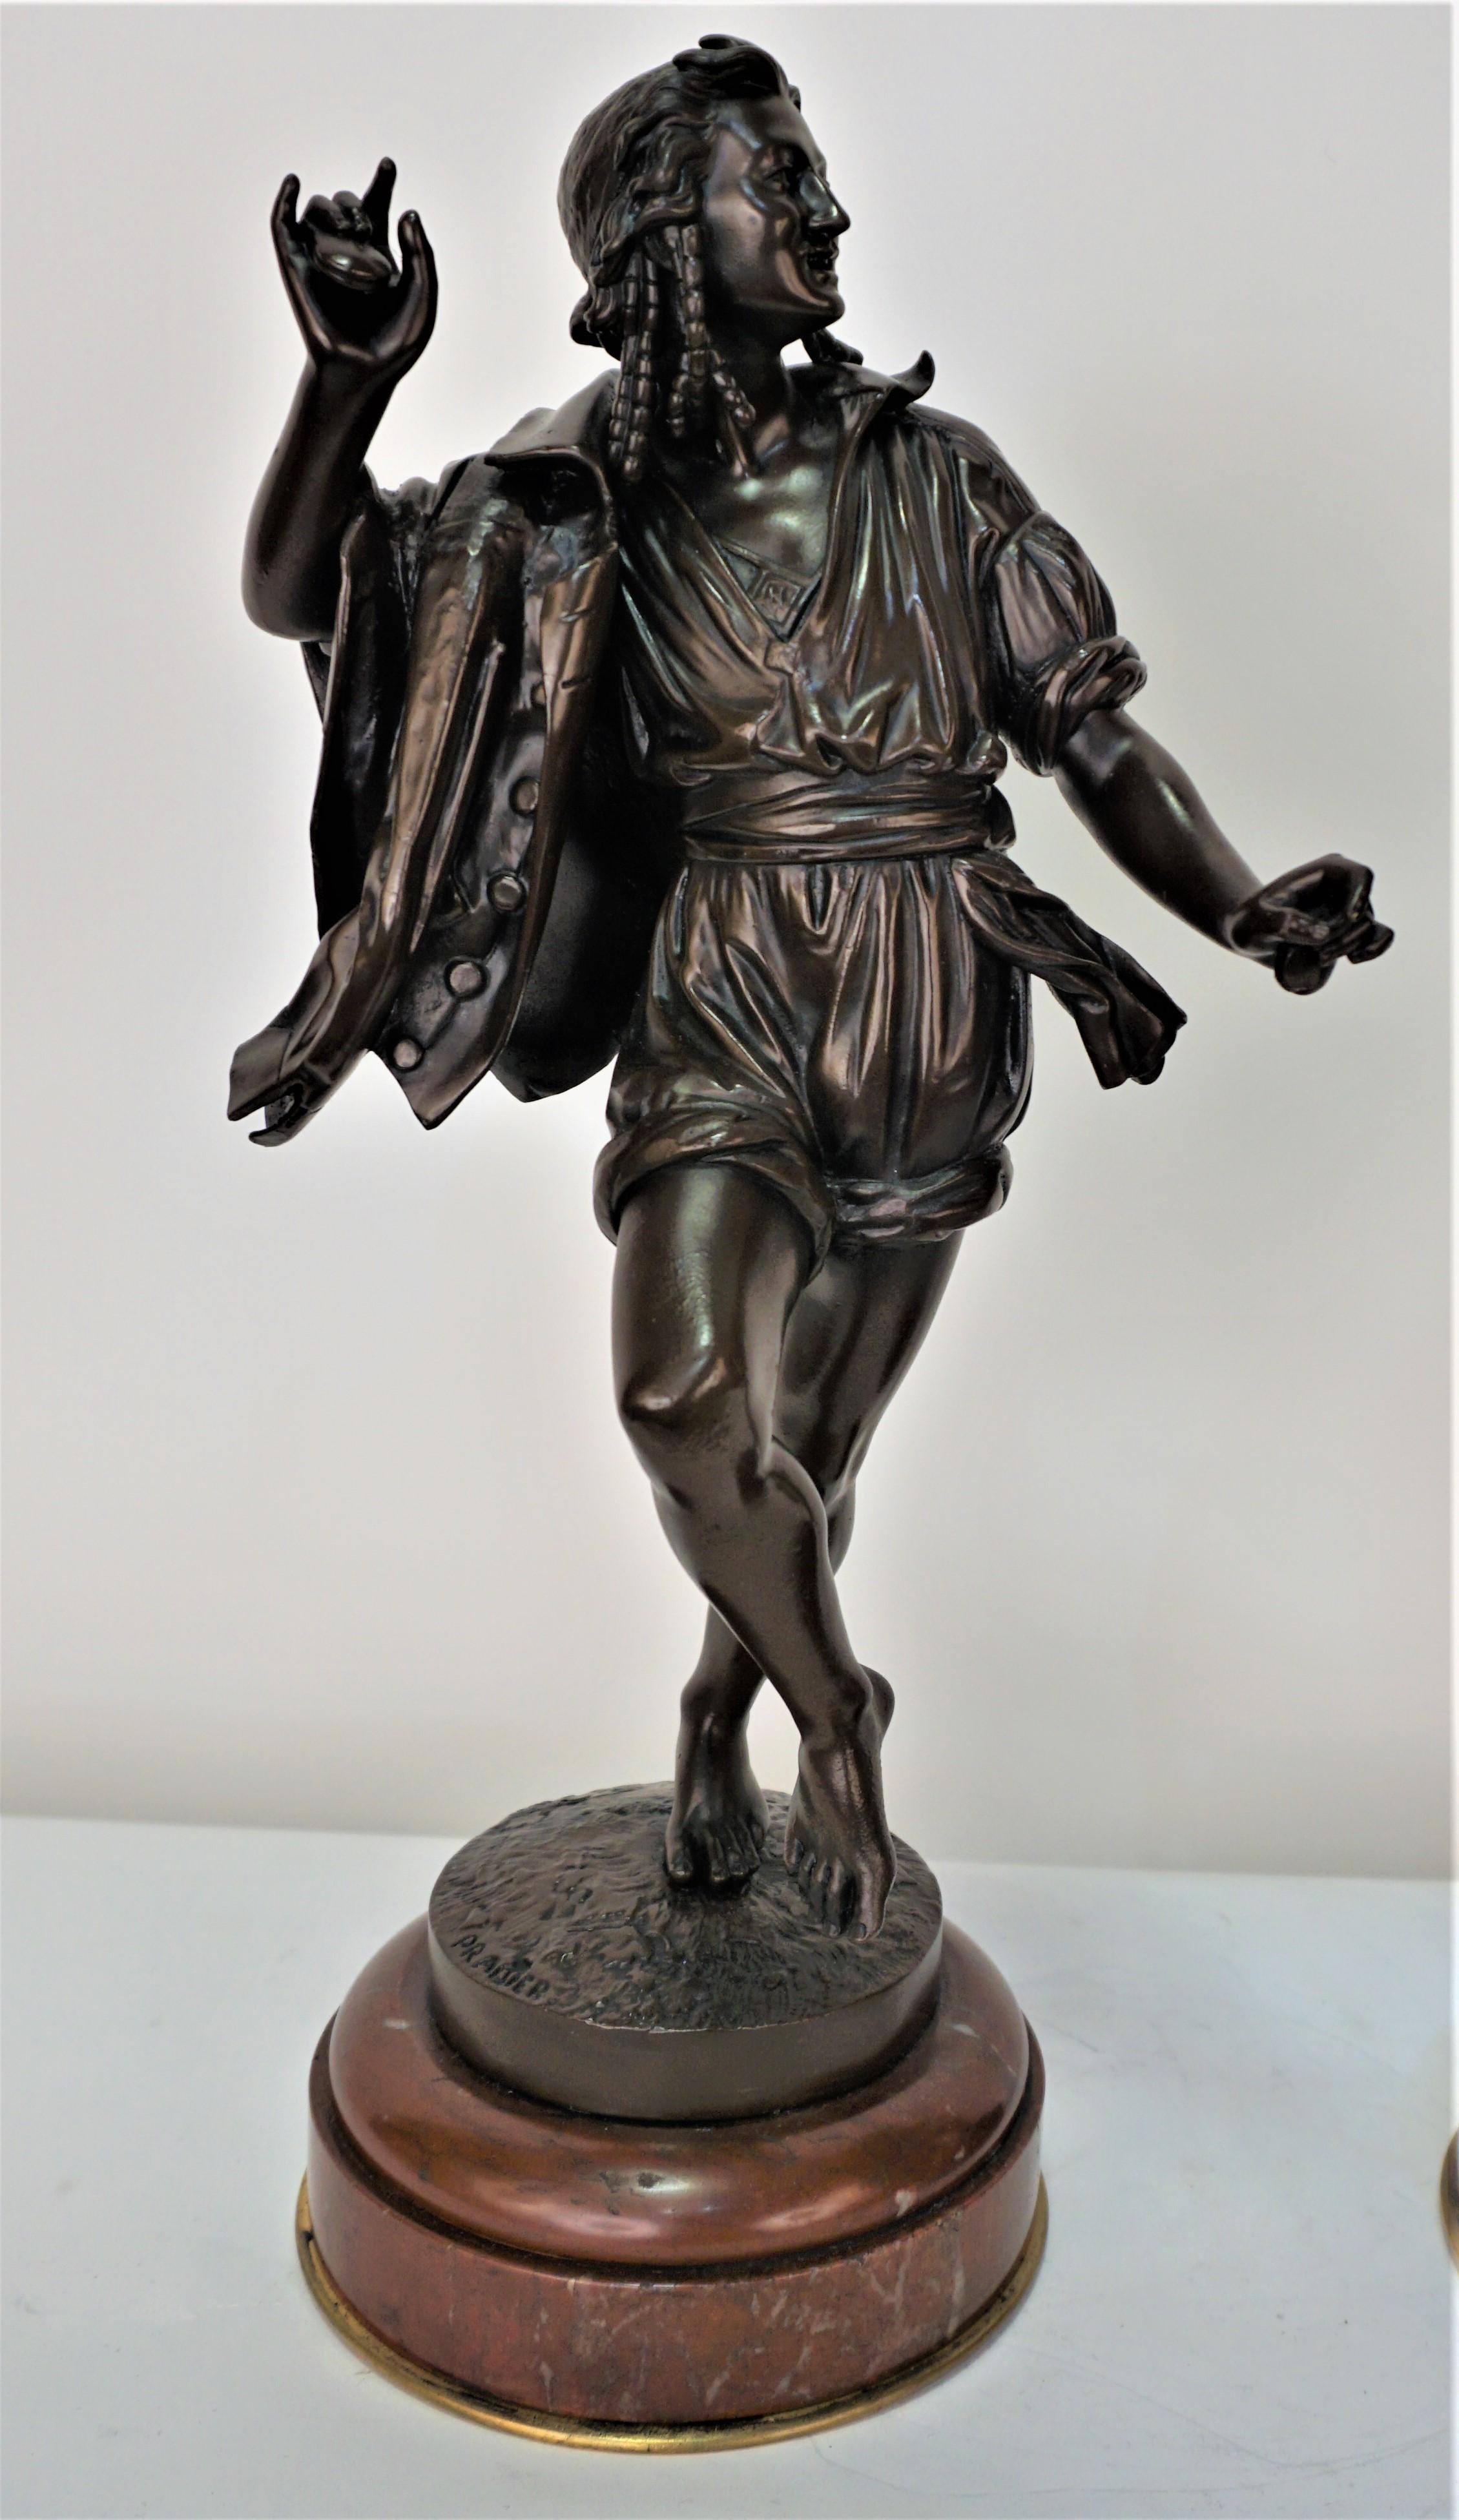 Paire de bronzes coulés de haute qualité du 19ème siècle avec beaucoup de détails par Pradier
Peinture à froid sur bronze reposant sur du marbre rouge